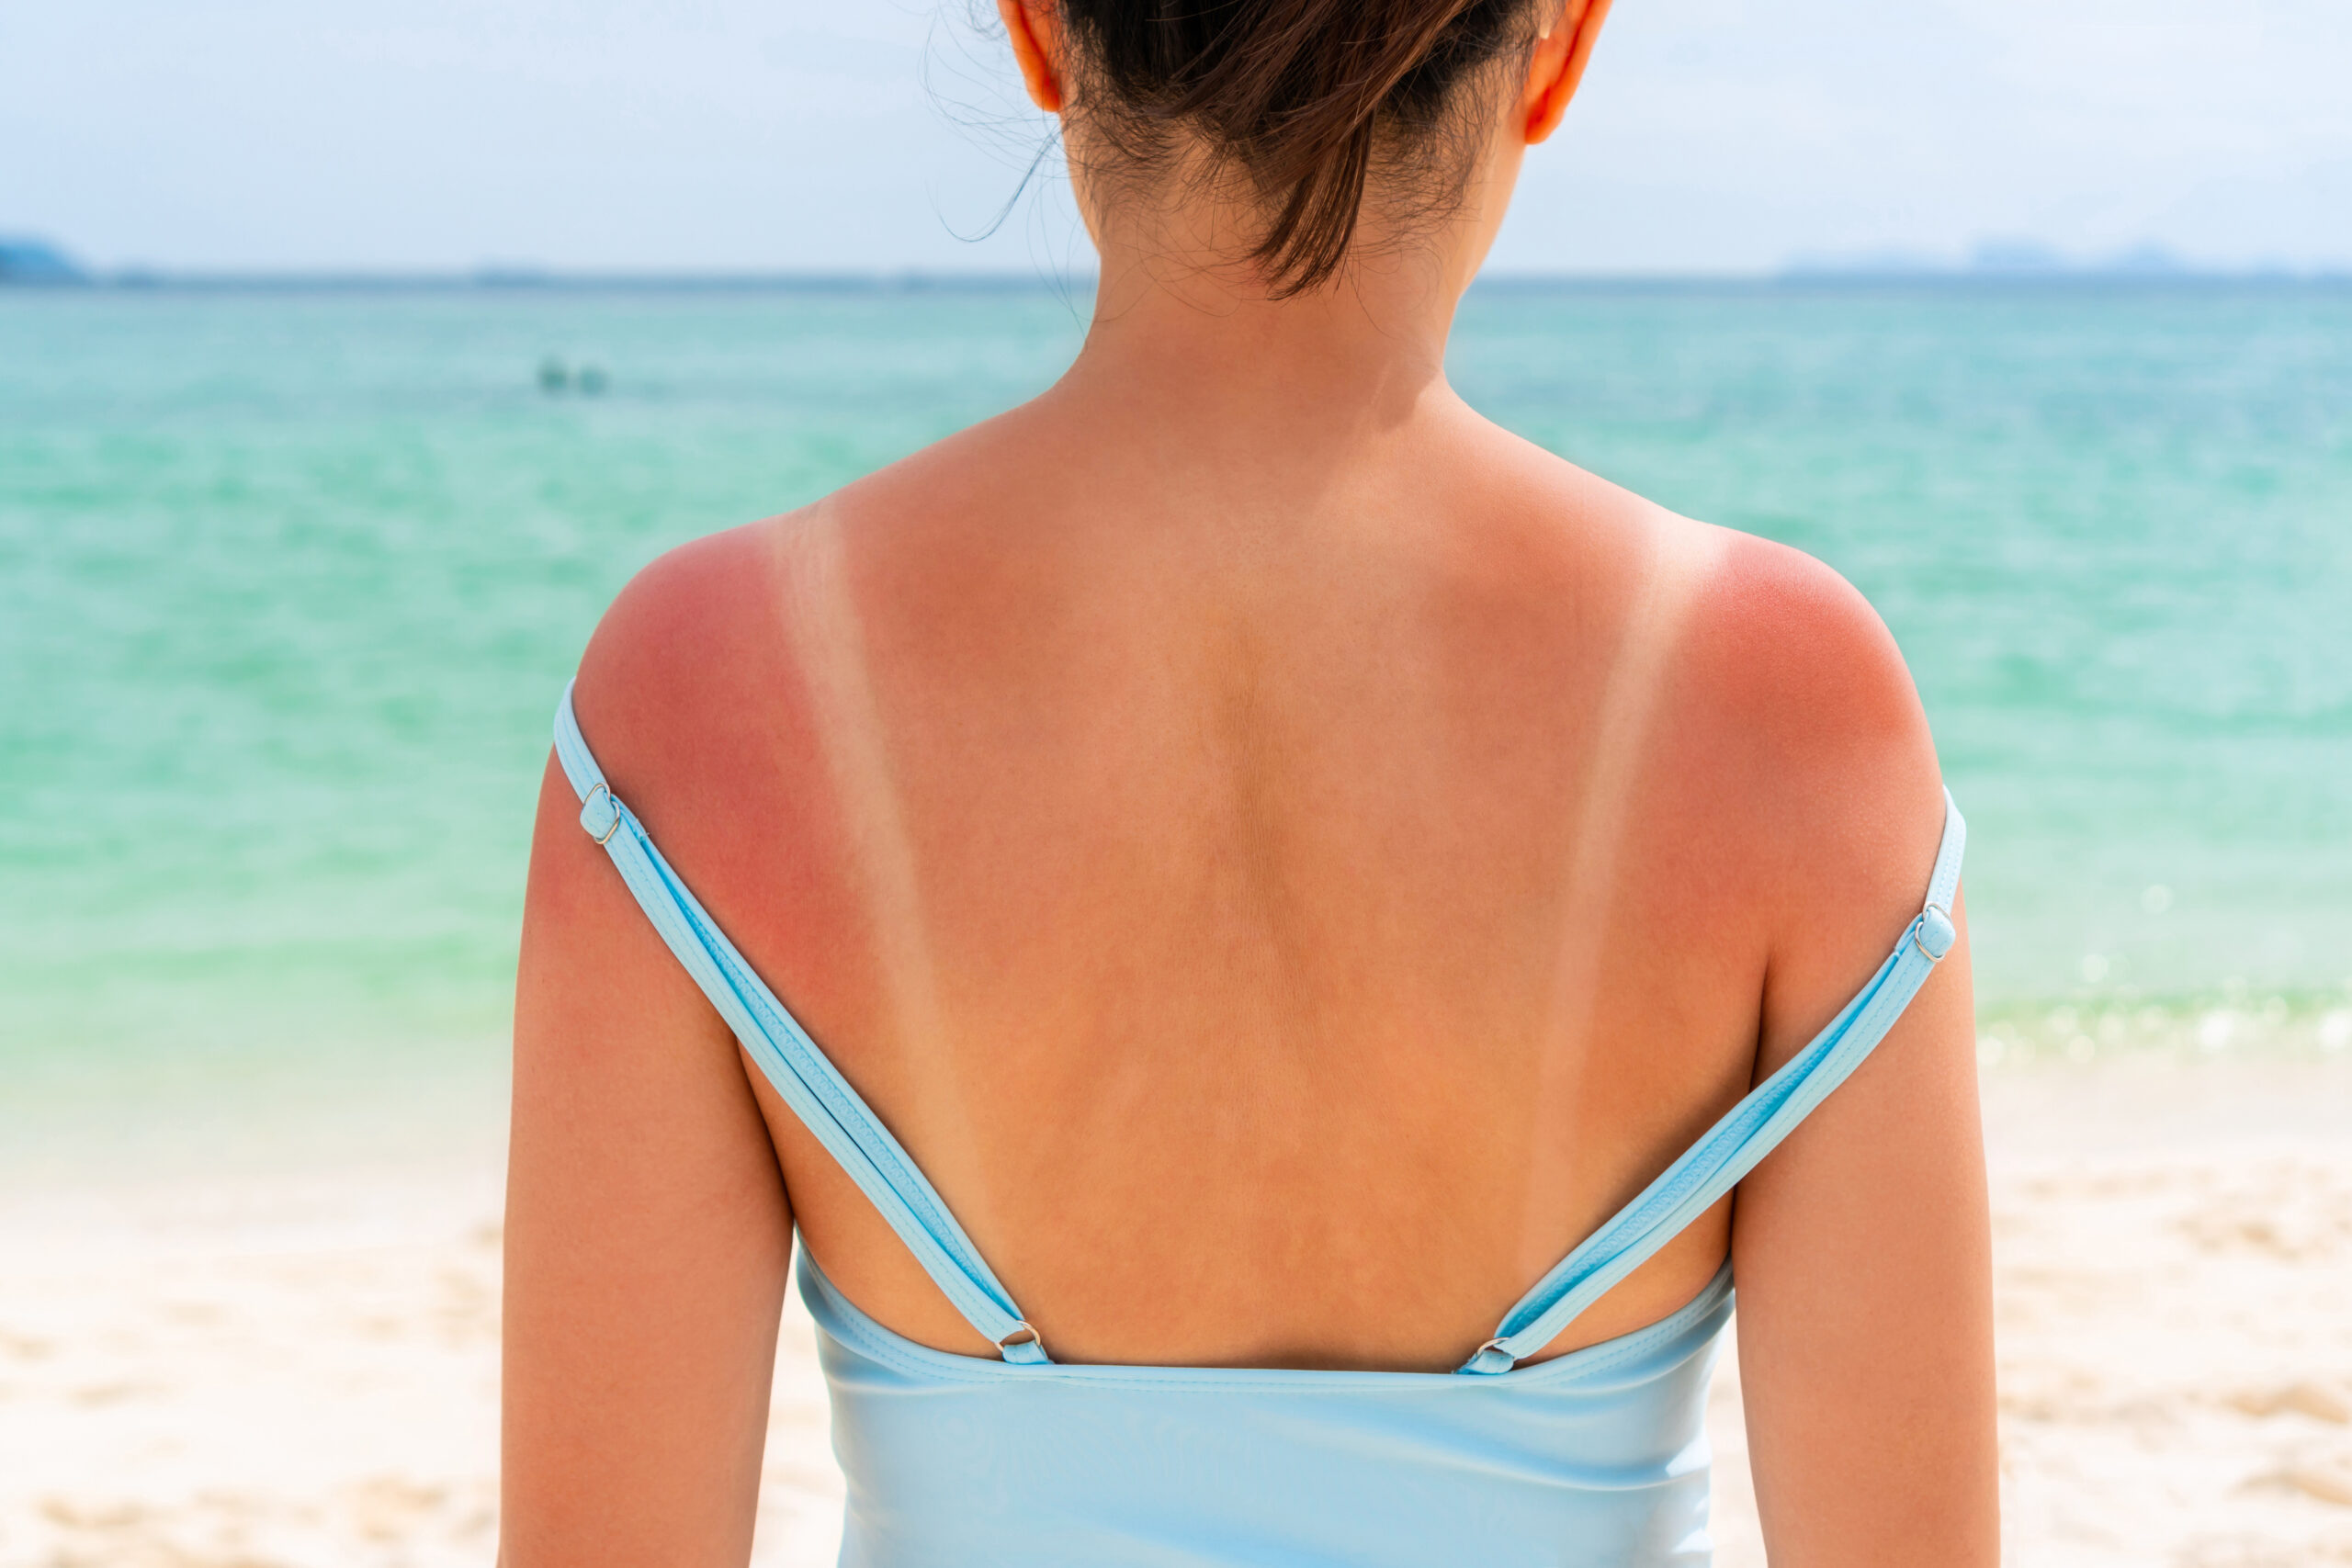 Sonnenschutzmittel im VKI-Test: 5x “Nicht genügend” für UV-Schutz